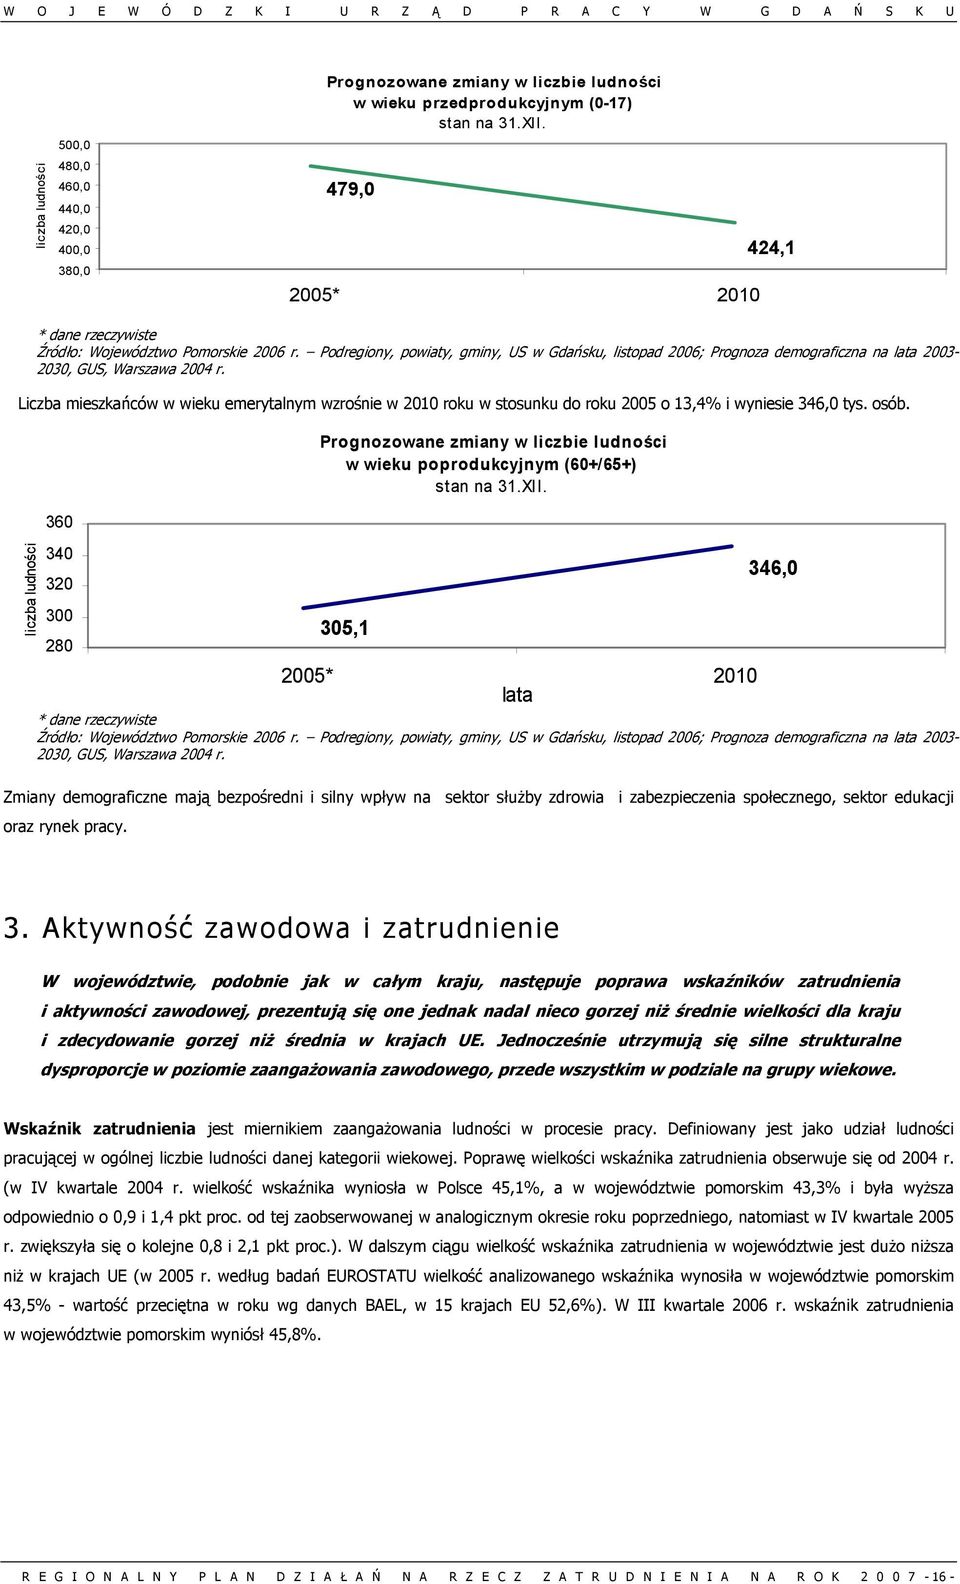 Podregiony, powiaty, gminy, US w Gdańsku, listopad 2006; Prognoza demograficzna na lata 2003-2030, GUS, Warszawa 2004 r.